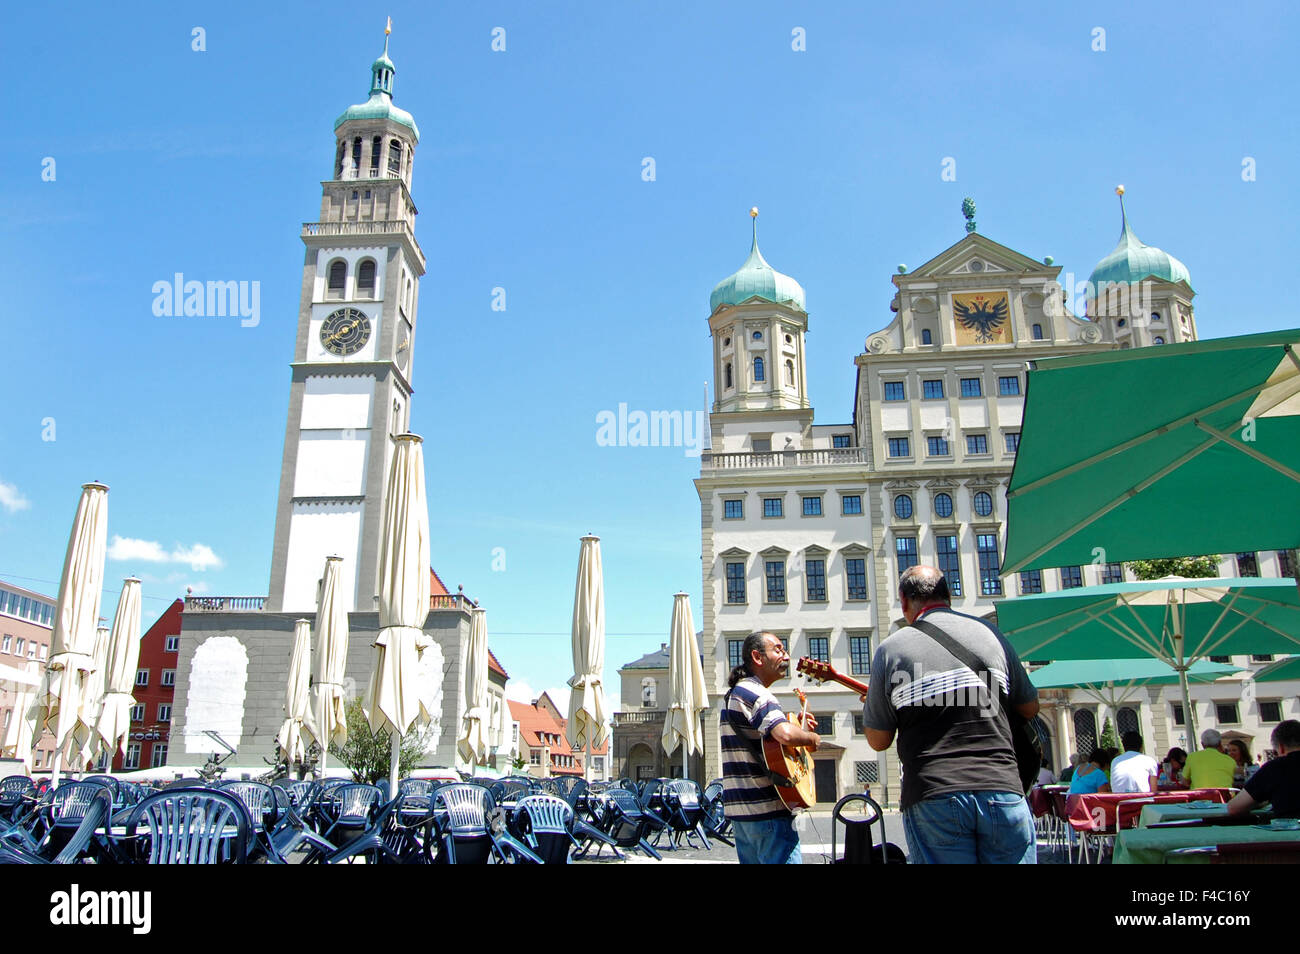 Der Perlachturm und das Rathaus auf dem Rathausplatz in Augsburg, Deutschland Stockfoto